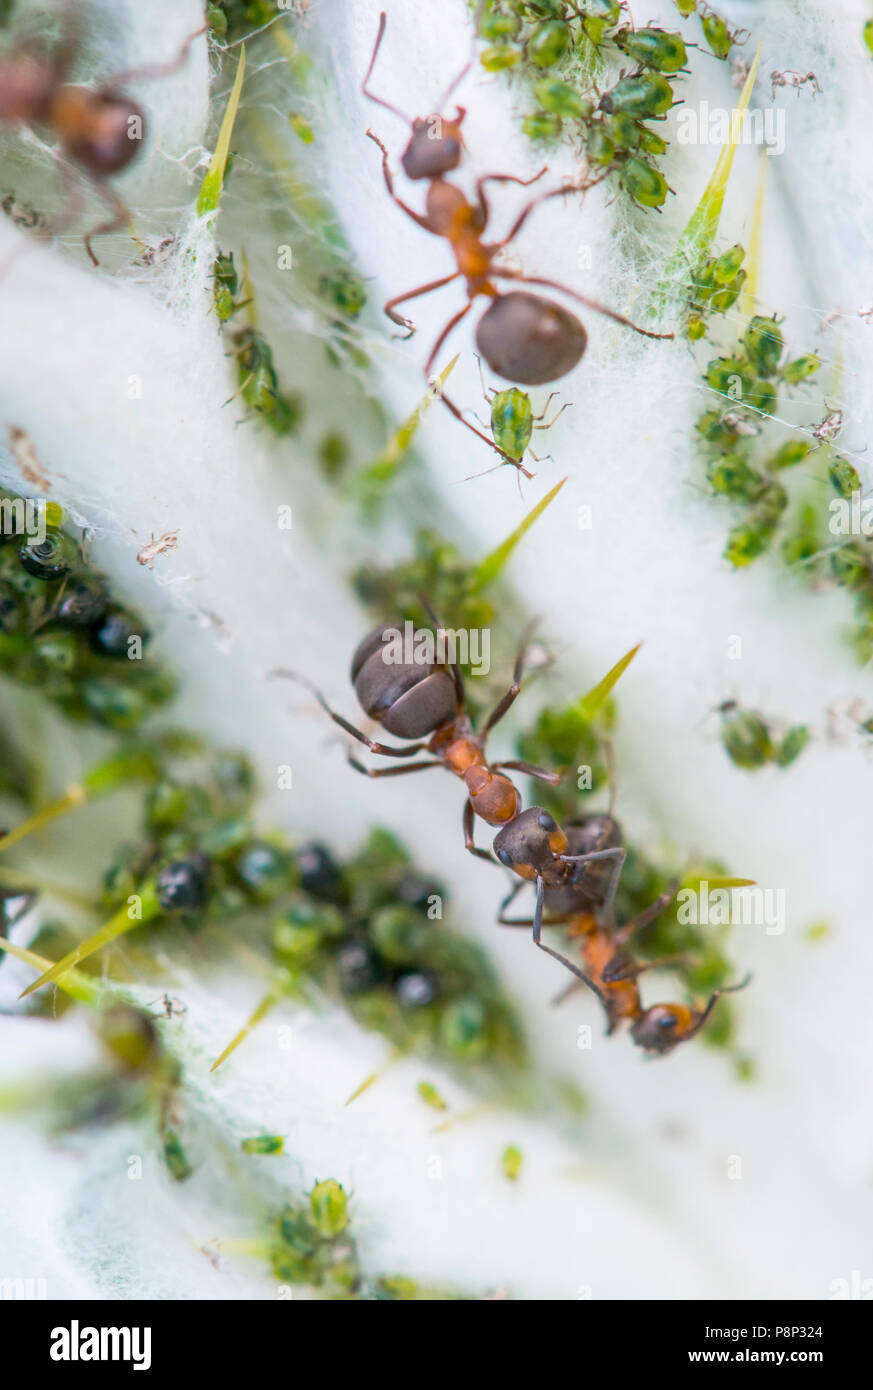 Los áfidos y hormigas de madera Foto de stock